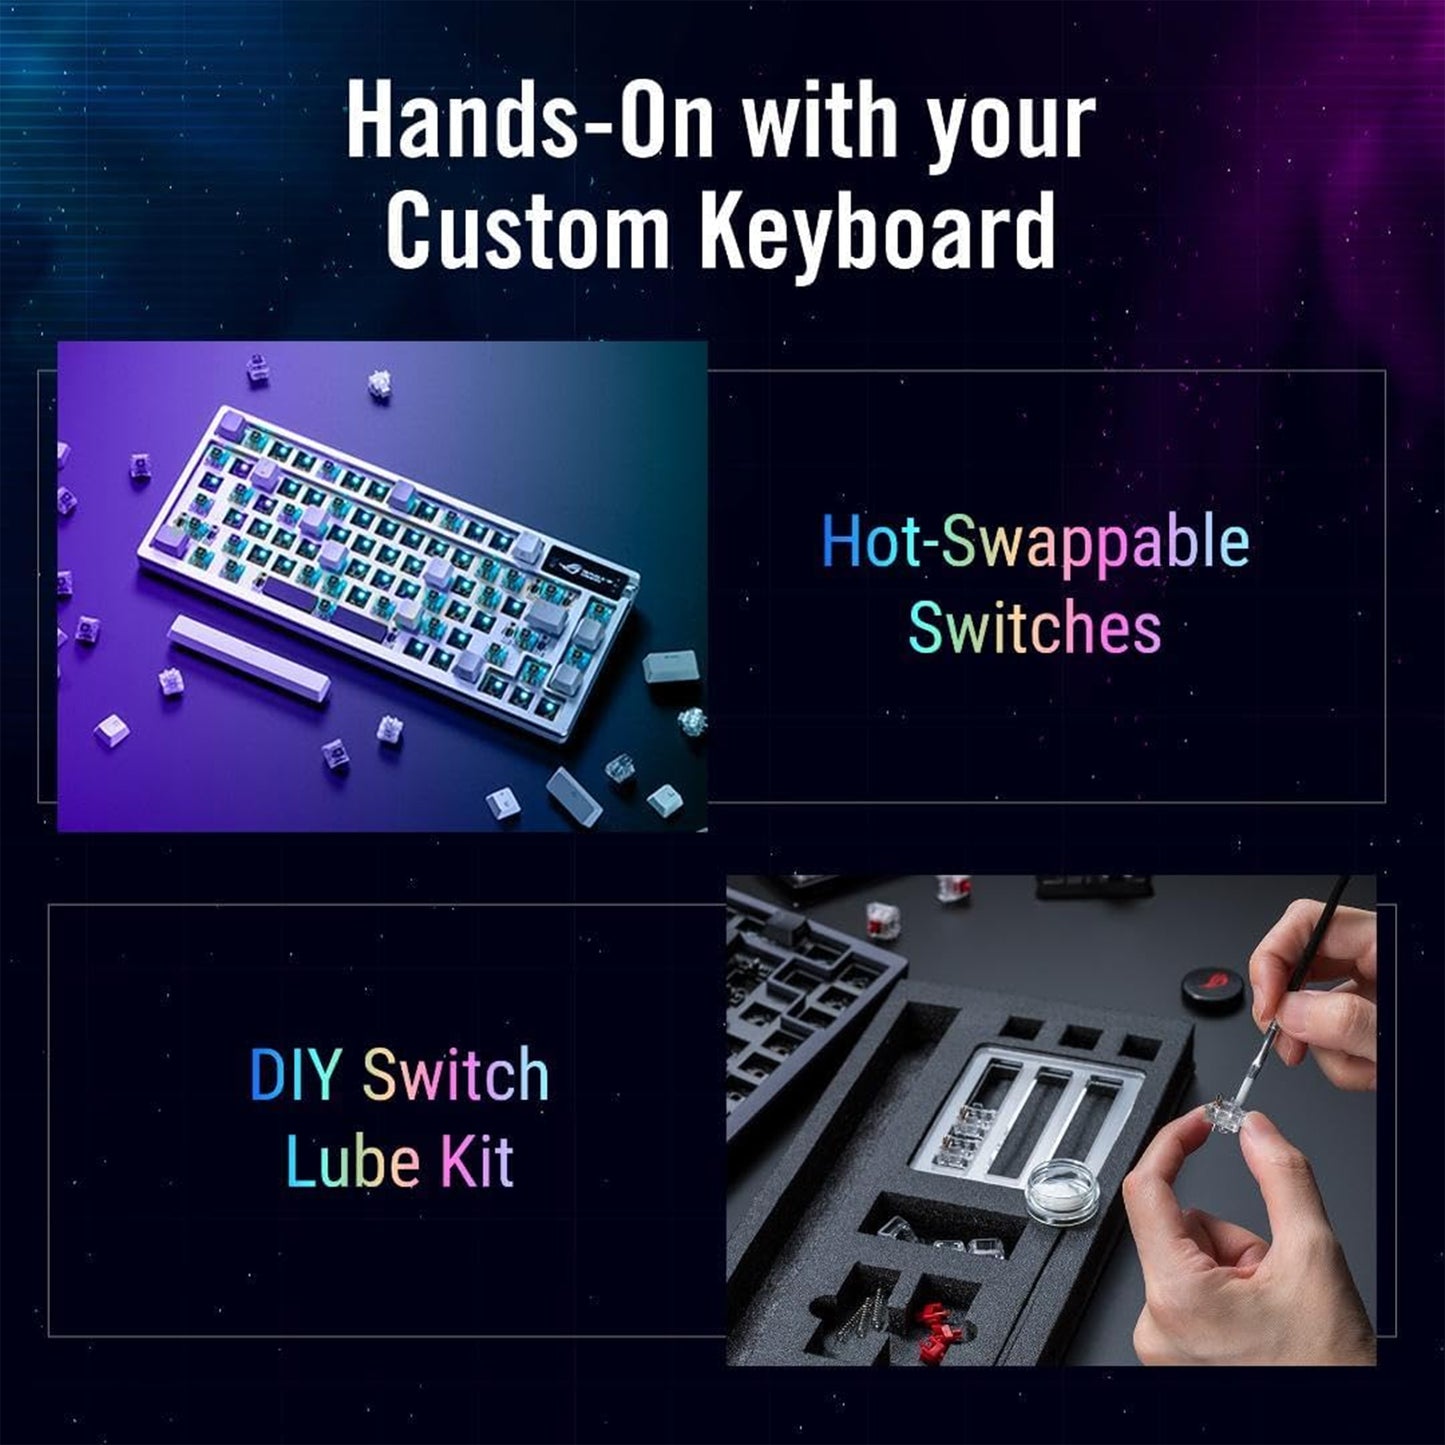 لوحة مفاتيح الألعاب ASUS ROG Azoth 75 اللاسلكية المخصصة DIY، وشاشة OLED، وحامل حشية، وتخميد ثلاثي الطبقات، ومفاتيح ROG NX بنية مسبقة التشحيم وقابلة للتبديل السريع ومثبتات لوحة المفاتيح، وأغطية مفاتيح PBT، RGB - أبيض 